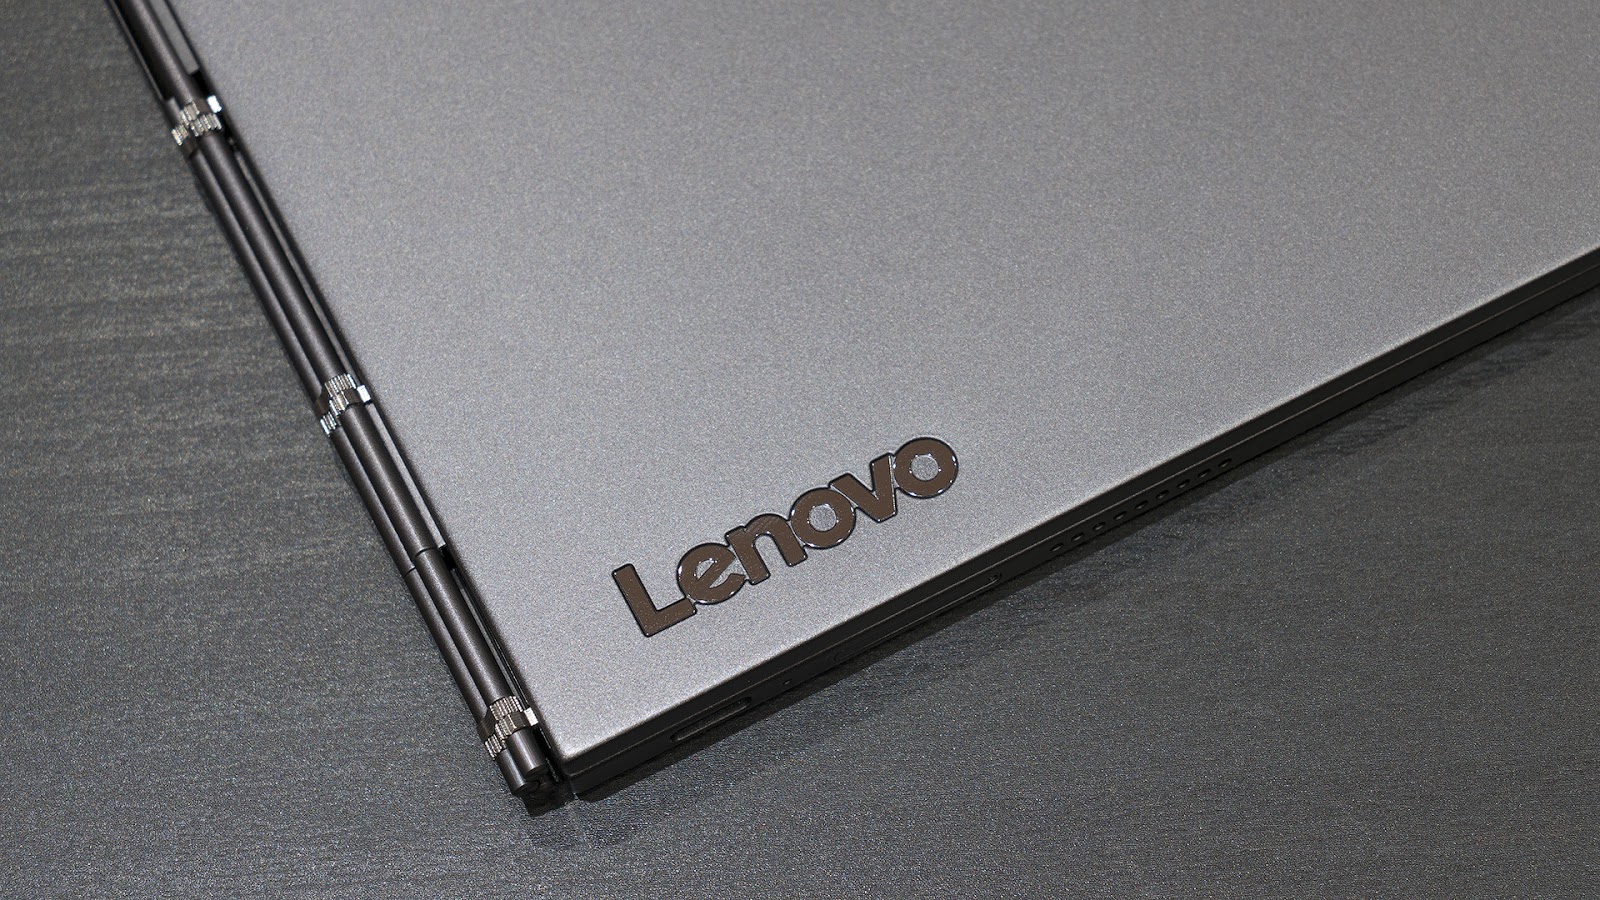 Lenovo YogaBook C930: устройство, которое заменяет сразу четыре гаджета - 4